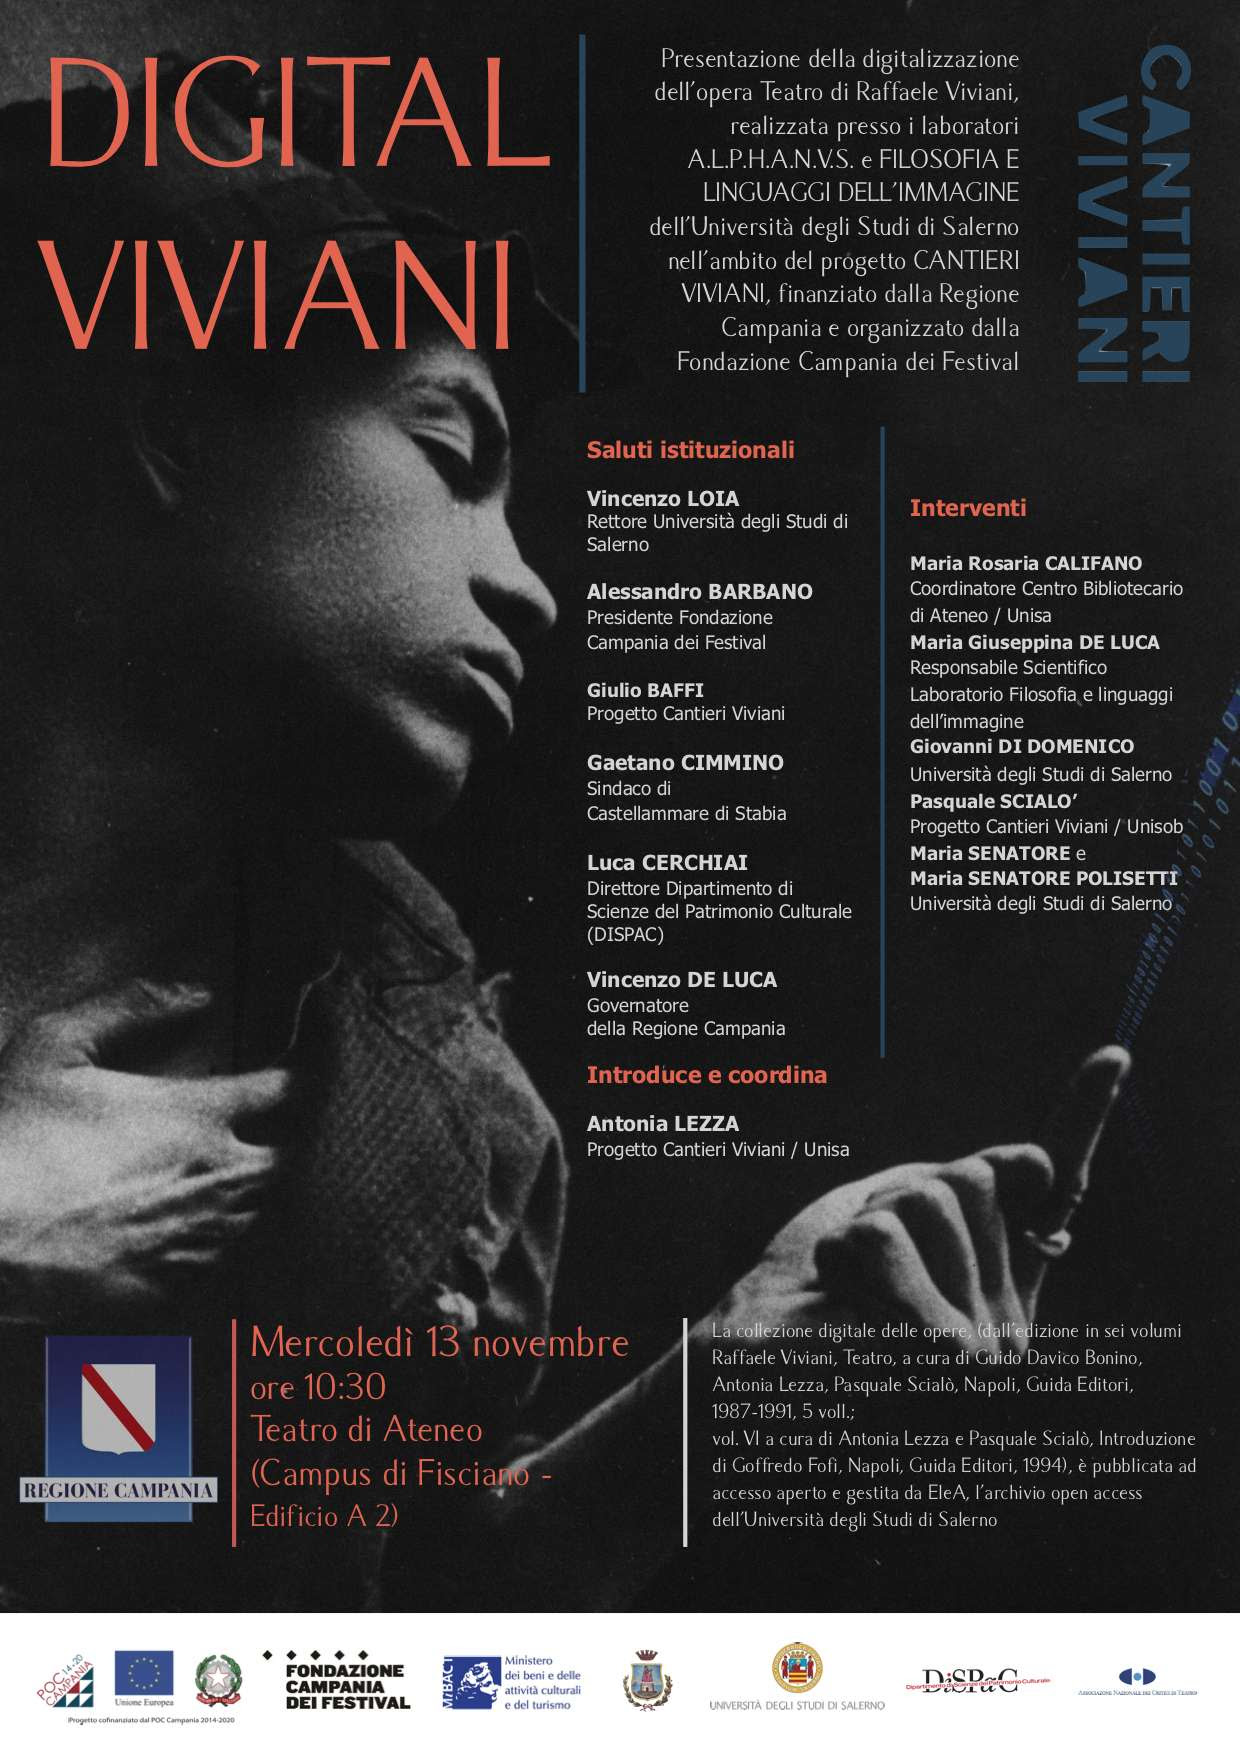 Digital Viviani. Presentazione dell’opera Teatro di Raffaele Viviani, mercoledì 13 novembre al Campus di Fisciano